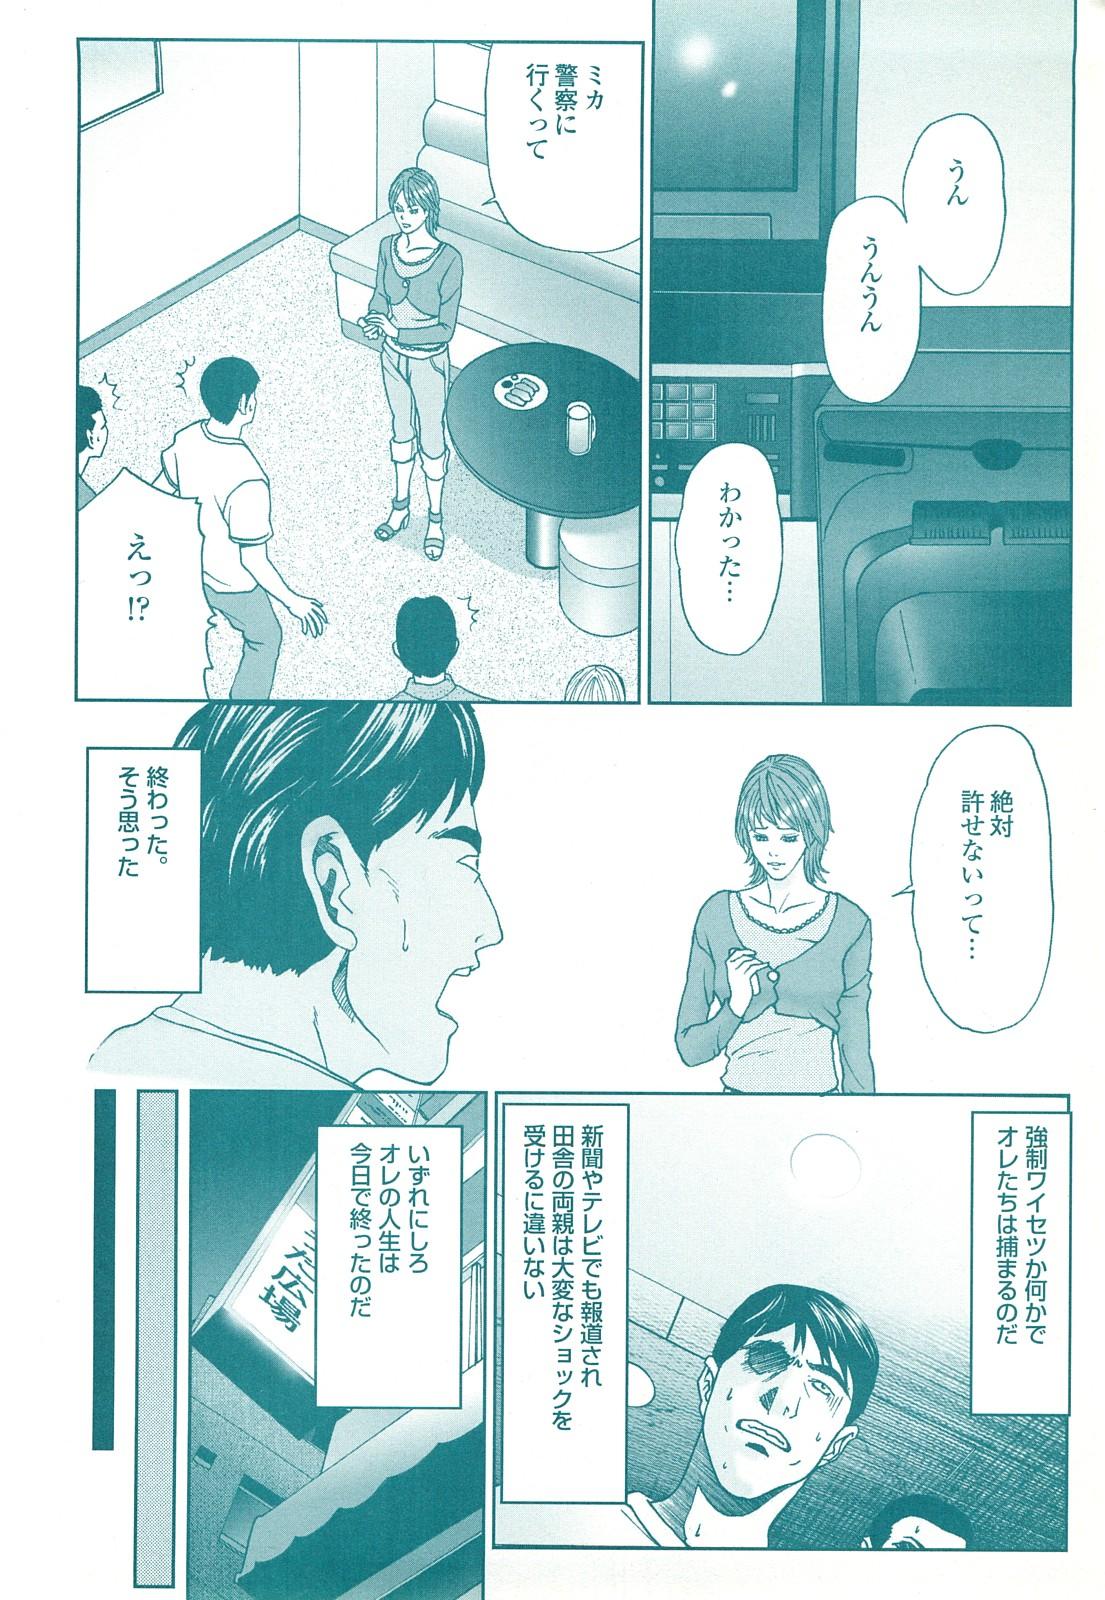 コミック裏モノJAPAN Vol.18 今井のりたつスペシャル号 157